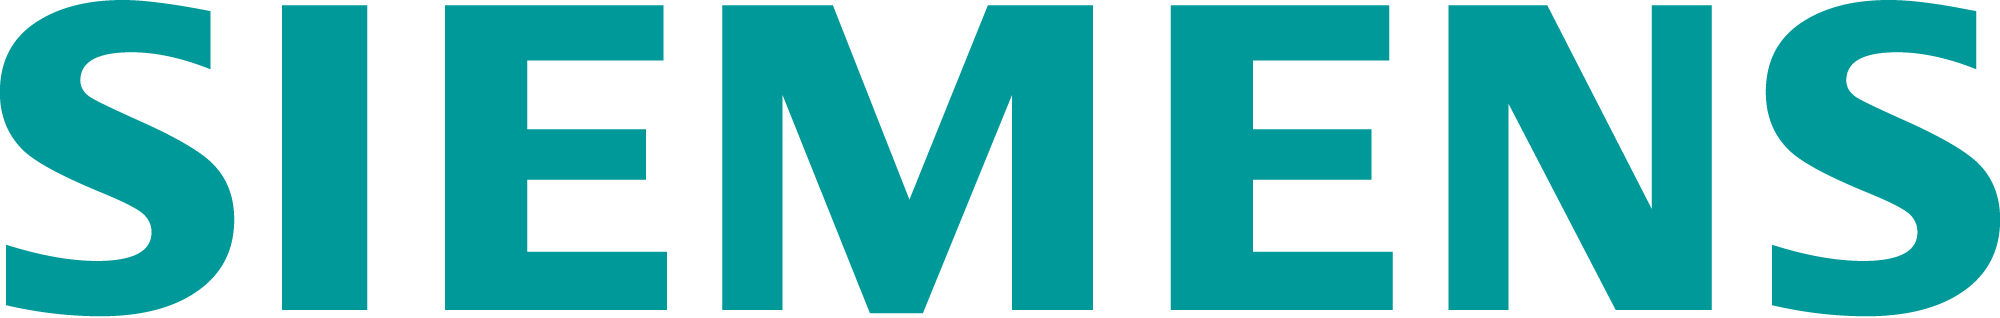 Siemens logo png